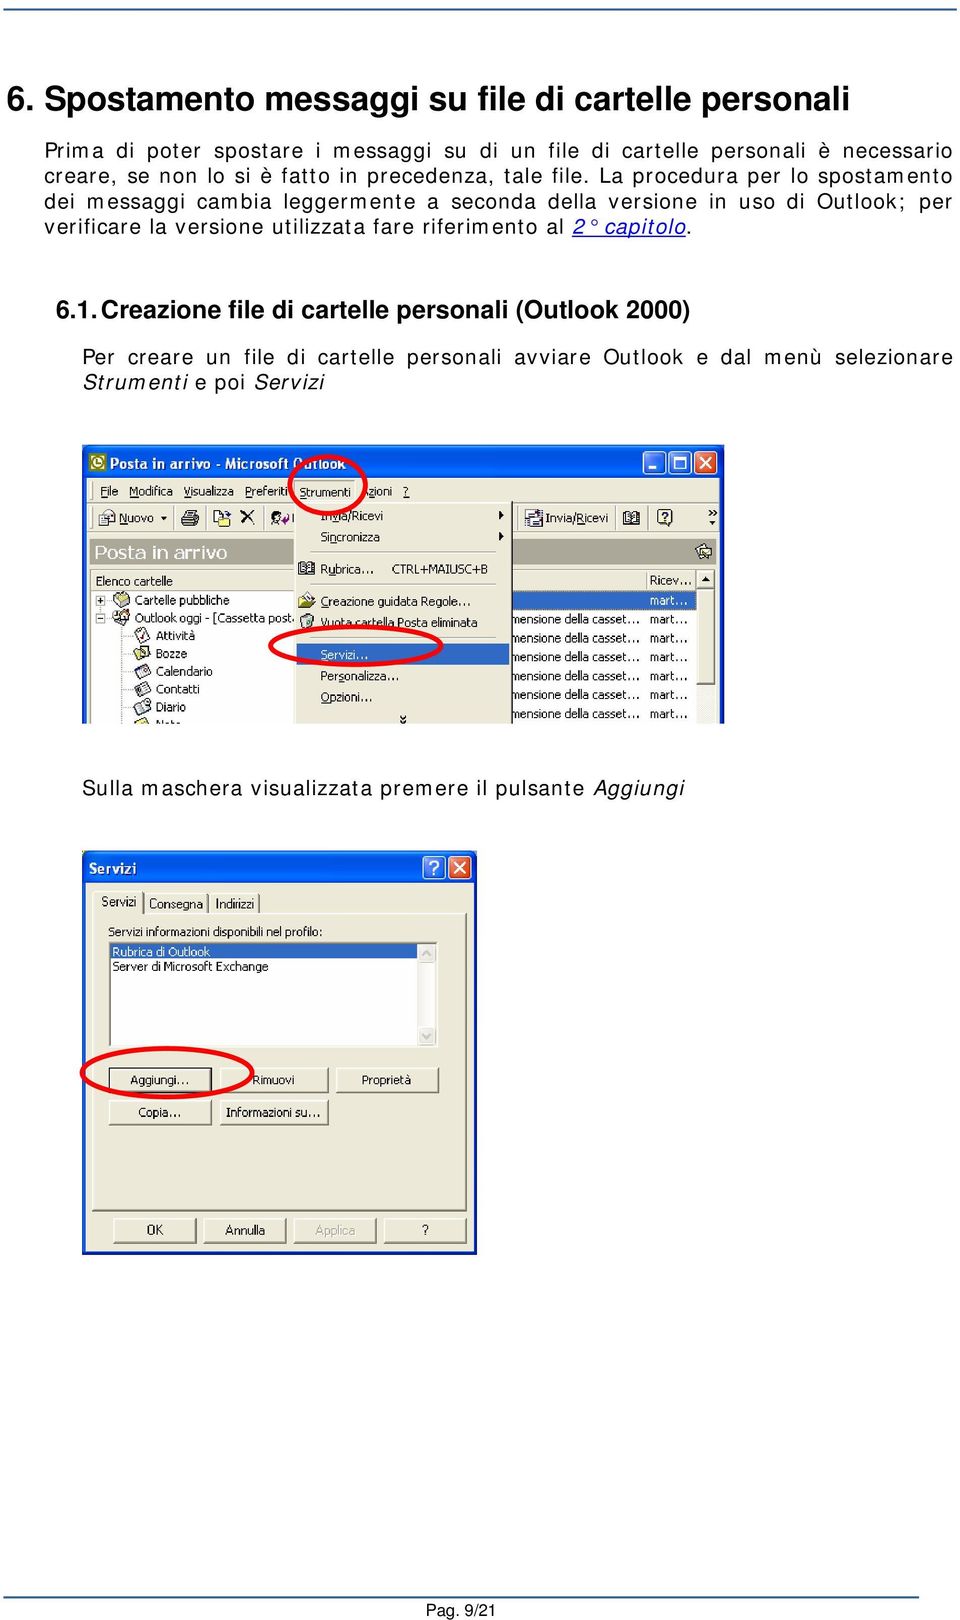 La procedura per lo spostamento dei messaggi cambia leggermente a seconda della versione in uso di Outlook; per verificare la versione utilizzata